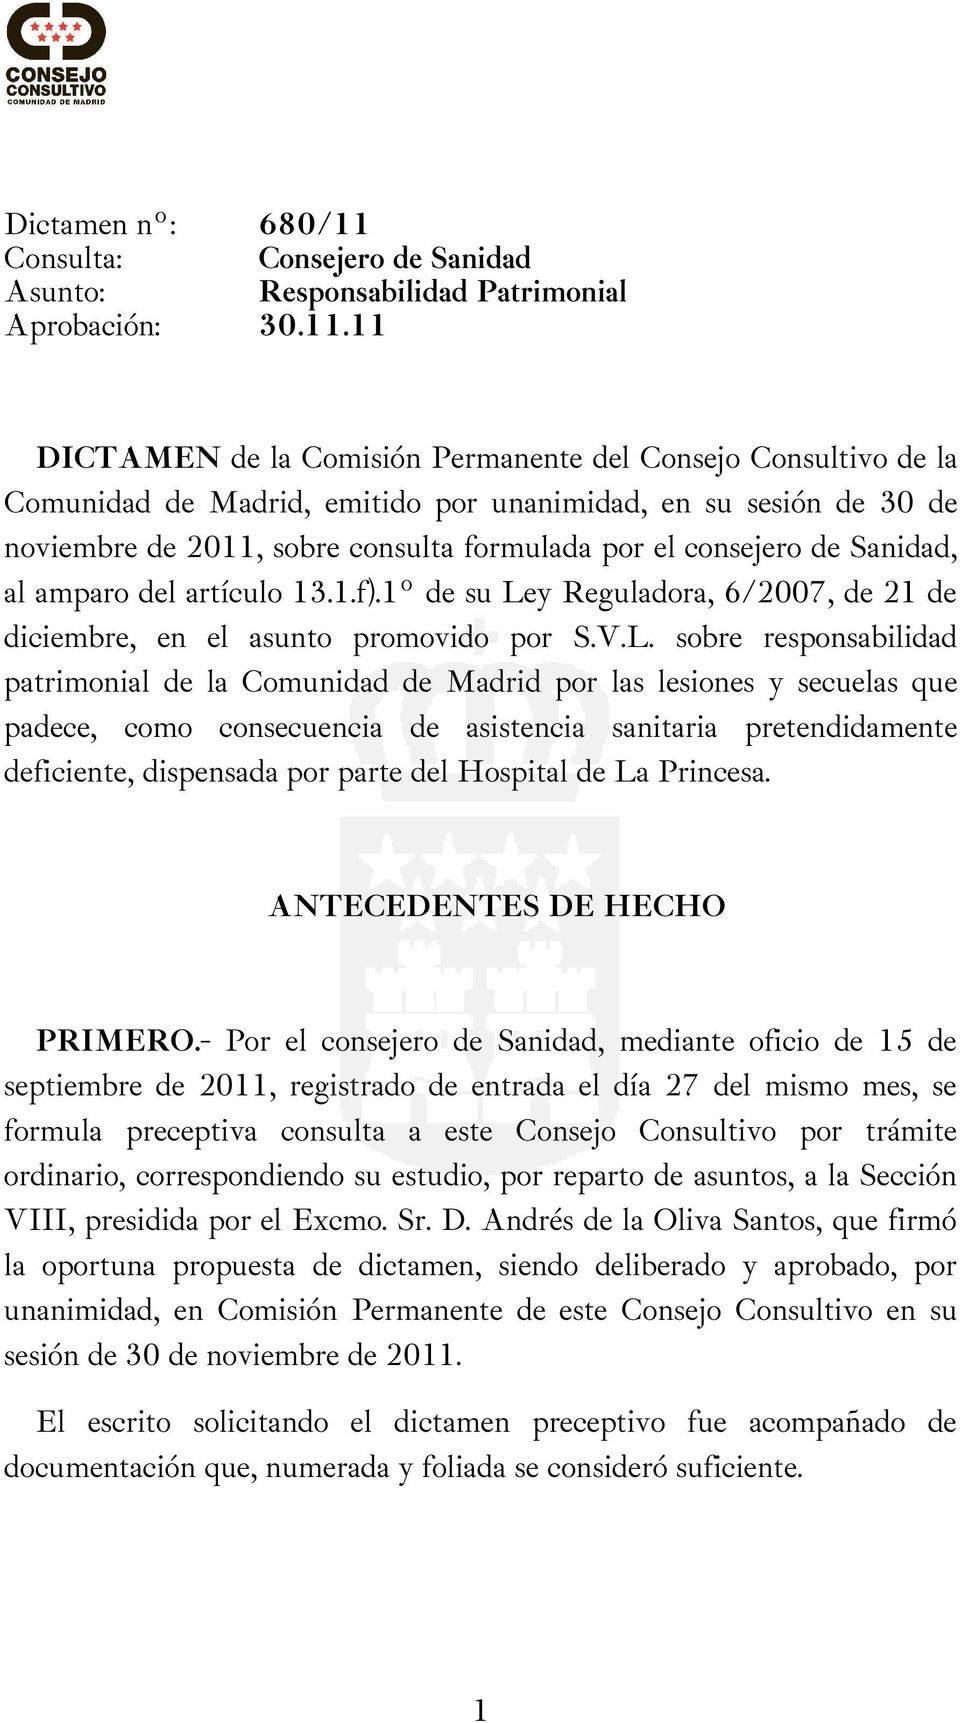 11 DICTAMEN de la Comisión Permanente del Consejo Consultivo de la Comunidad de Madrid, emitido por unanimidad, en su sesión de 30 de noviembre de 2011, sobre consulta formulada por el consejero de